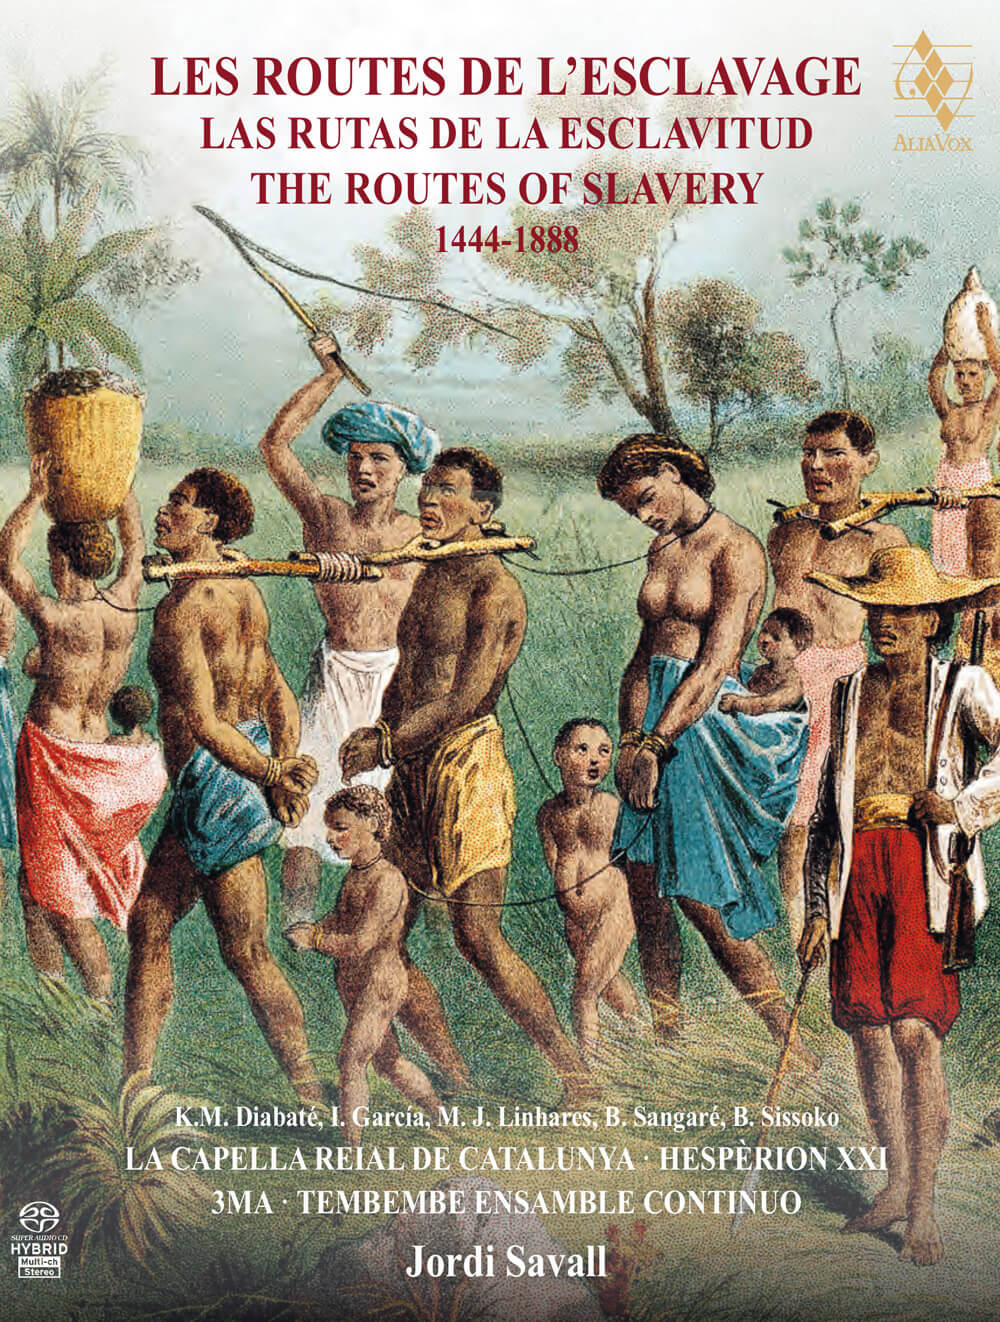 Tiempos y costors, les routes de l'esclavage